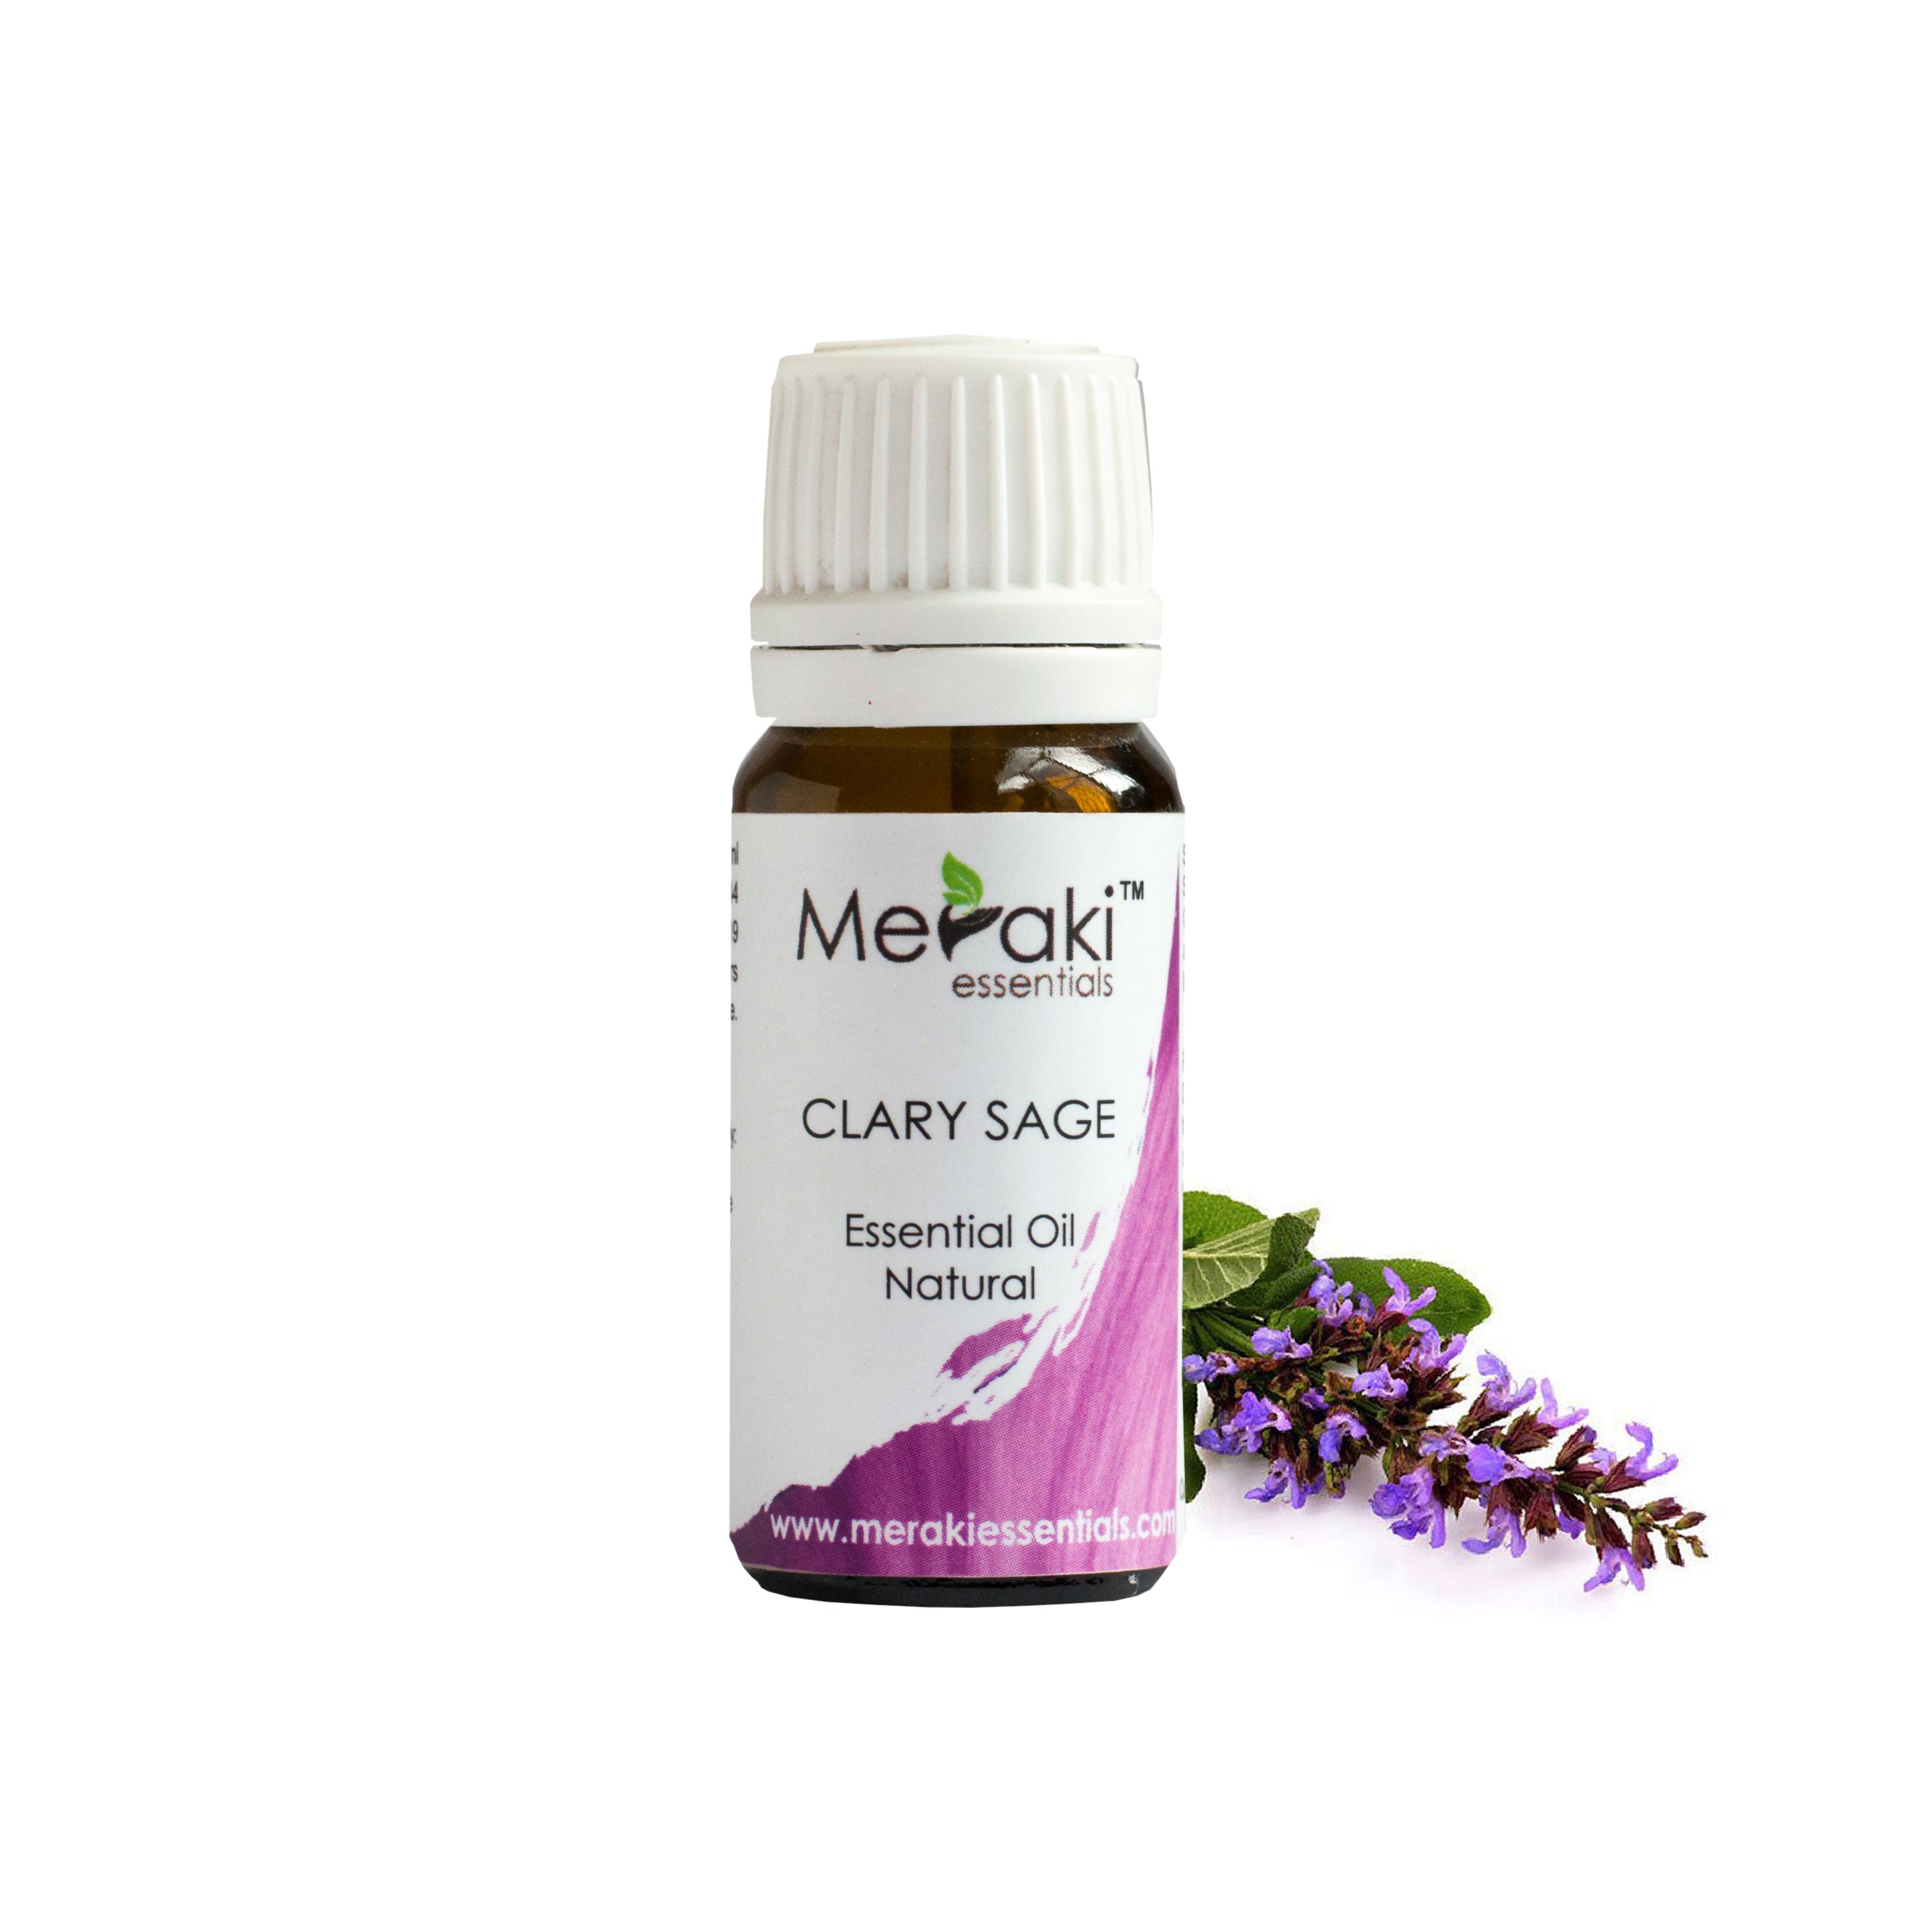 Meraki Essentials Clary Sage Essential Oil